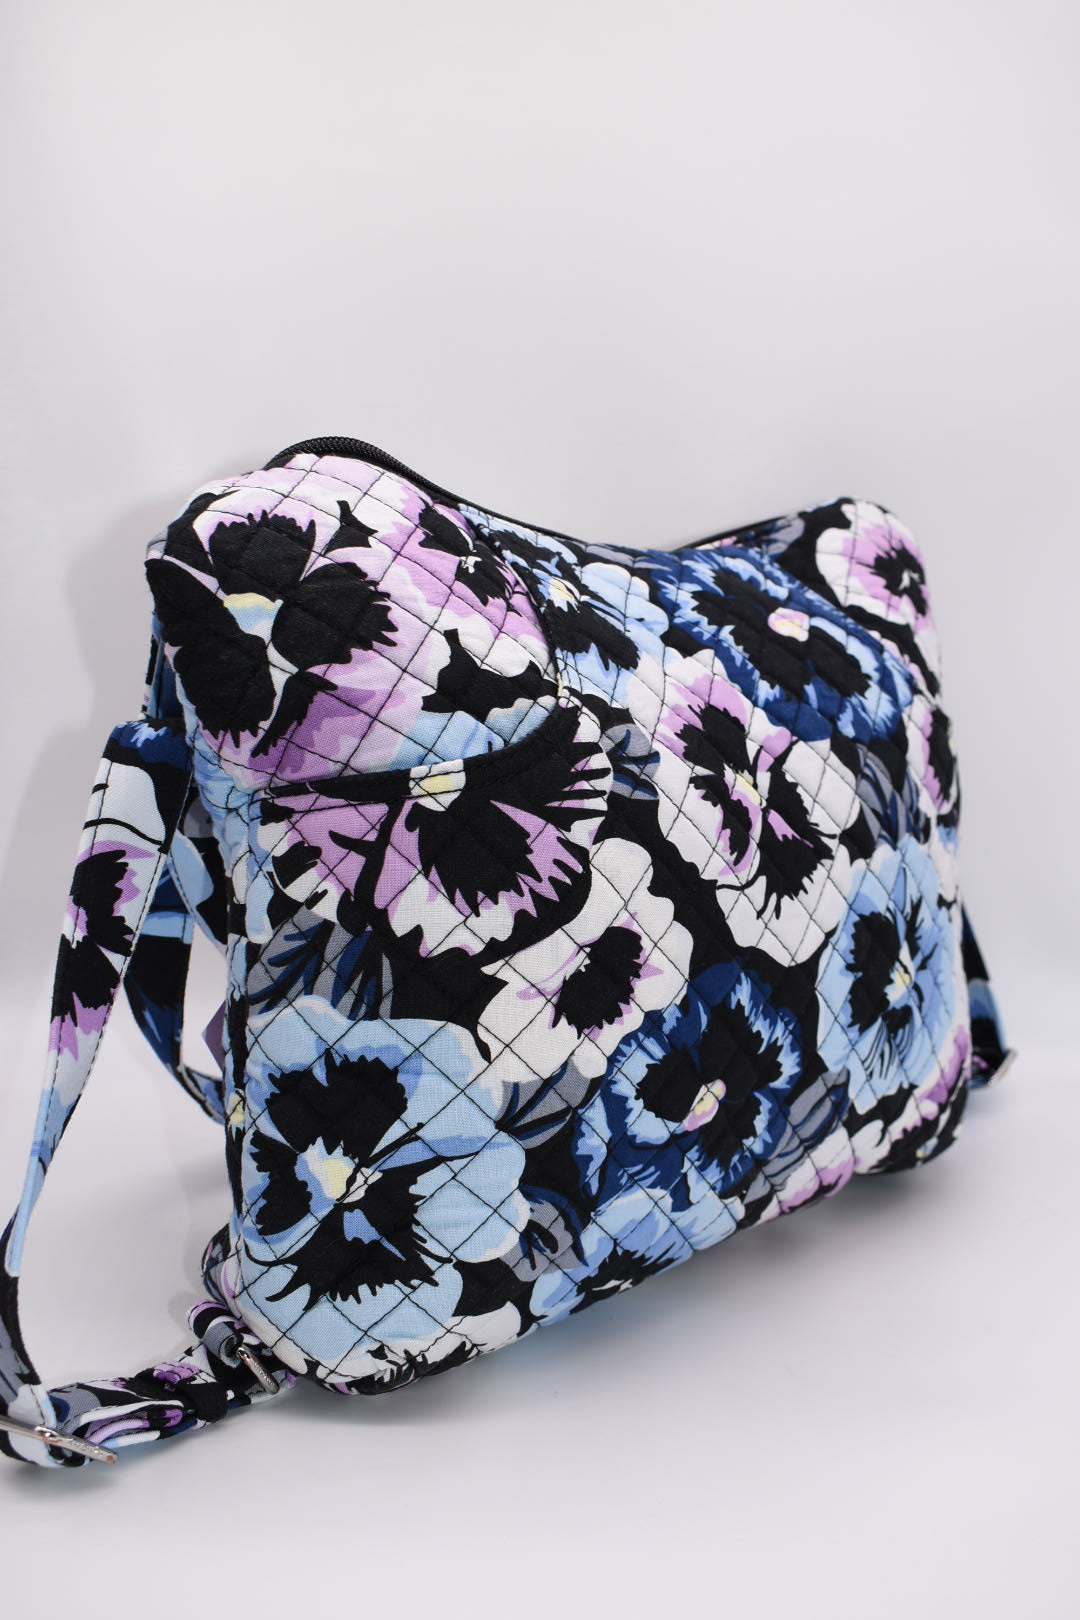 Vera Bradley Convertible Backpack Shoulder Bag in Plum Pansies